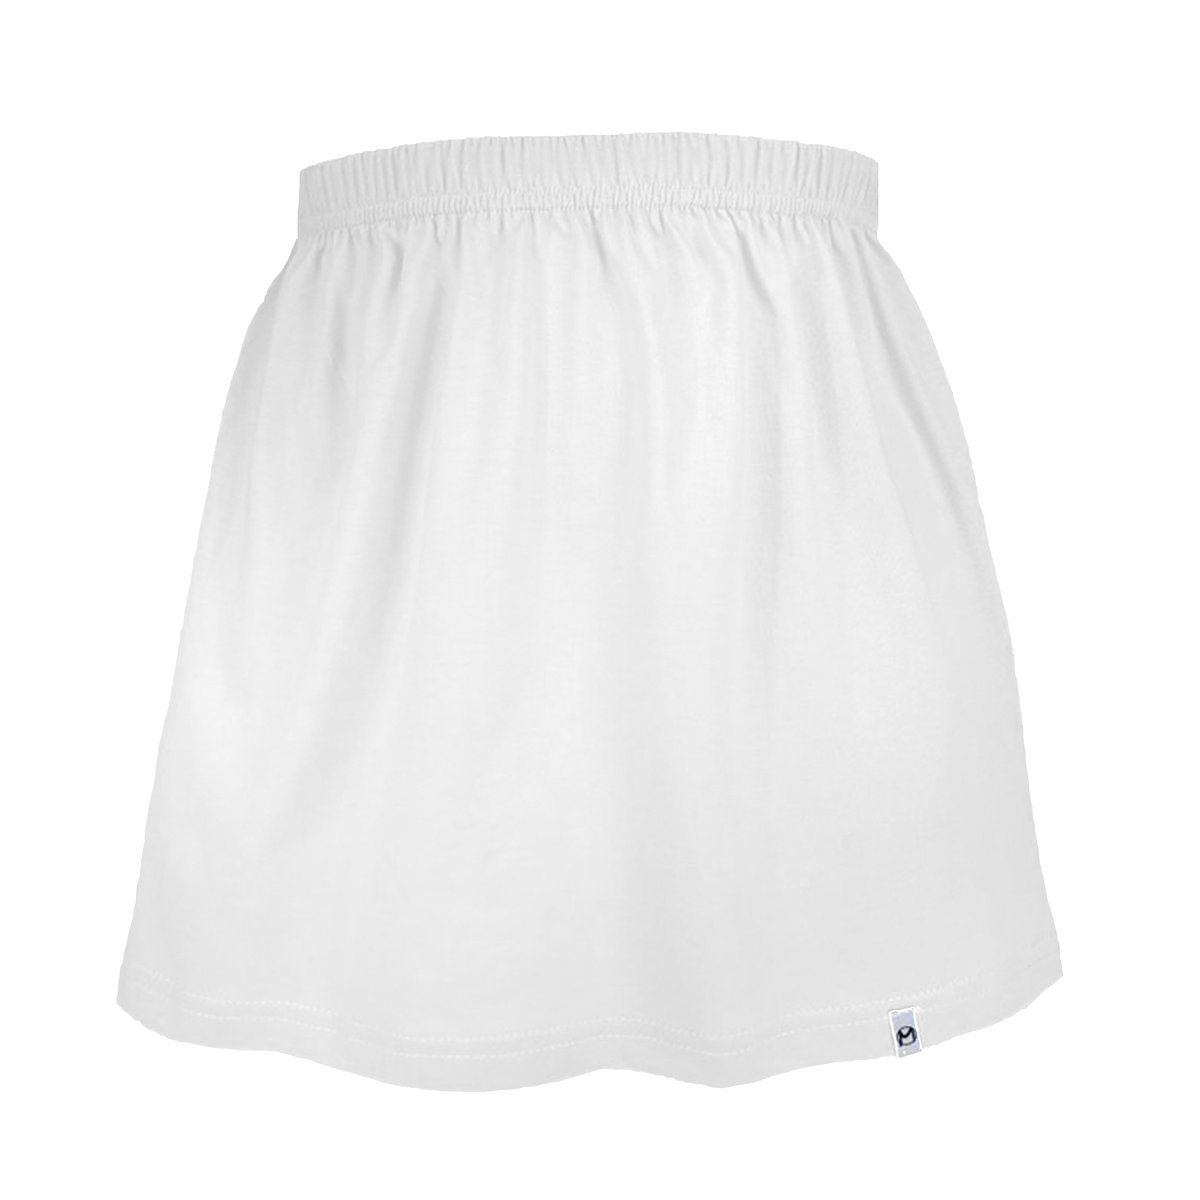 Biała spódniczka dla dziewczynki bawełniana spódnica dziecięca/ dziewczęca gładka 104/110